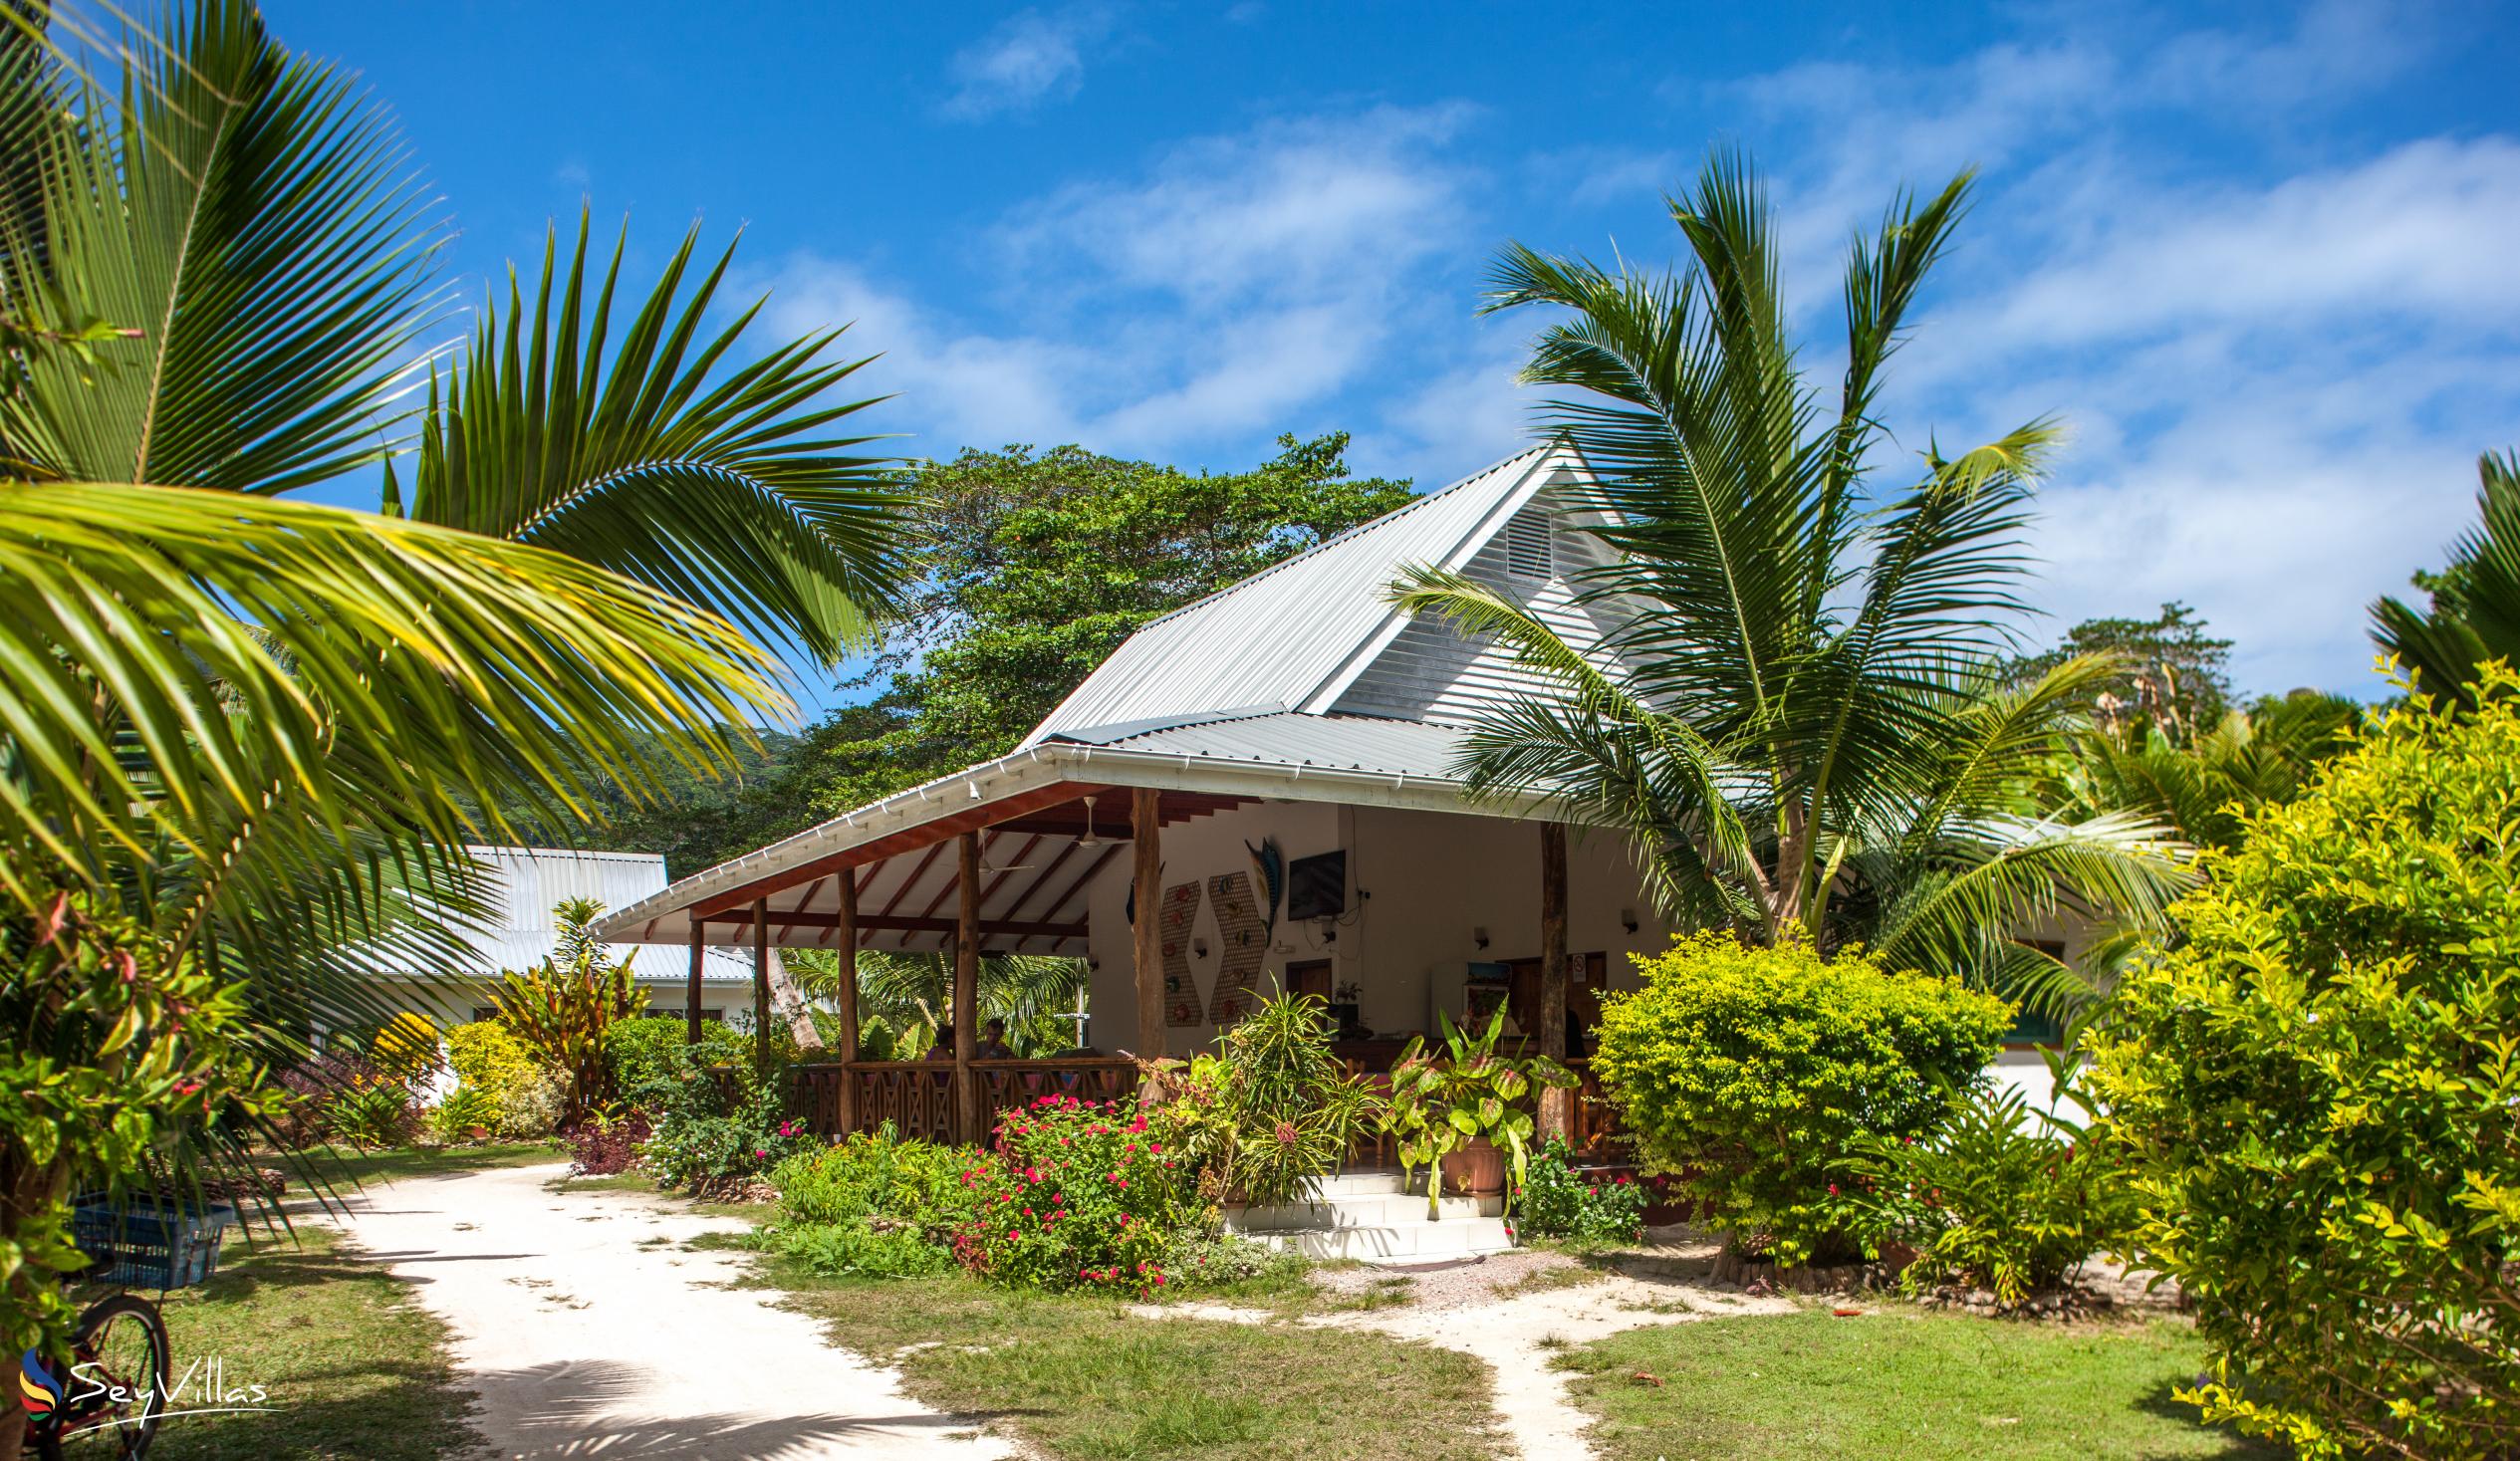 Photo 9: Villa Veuve - Outdoor area - La Digue (Seychelles)